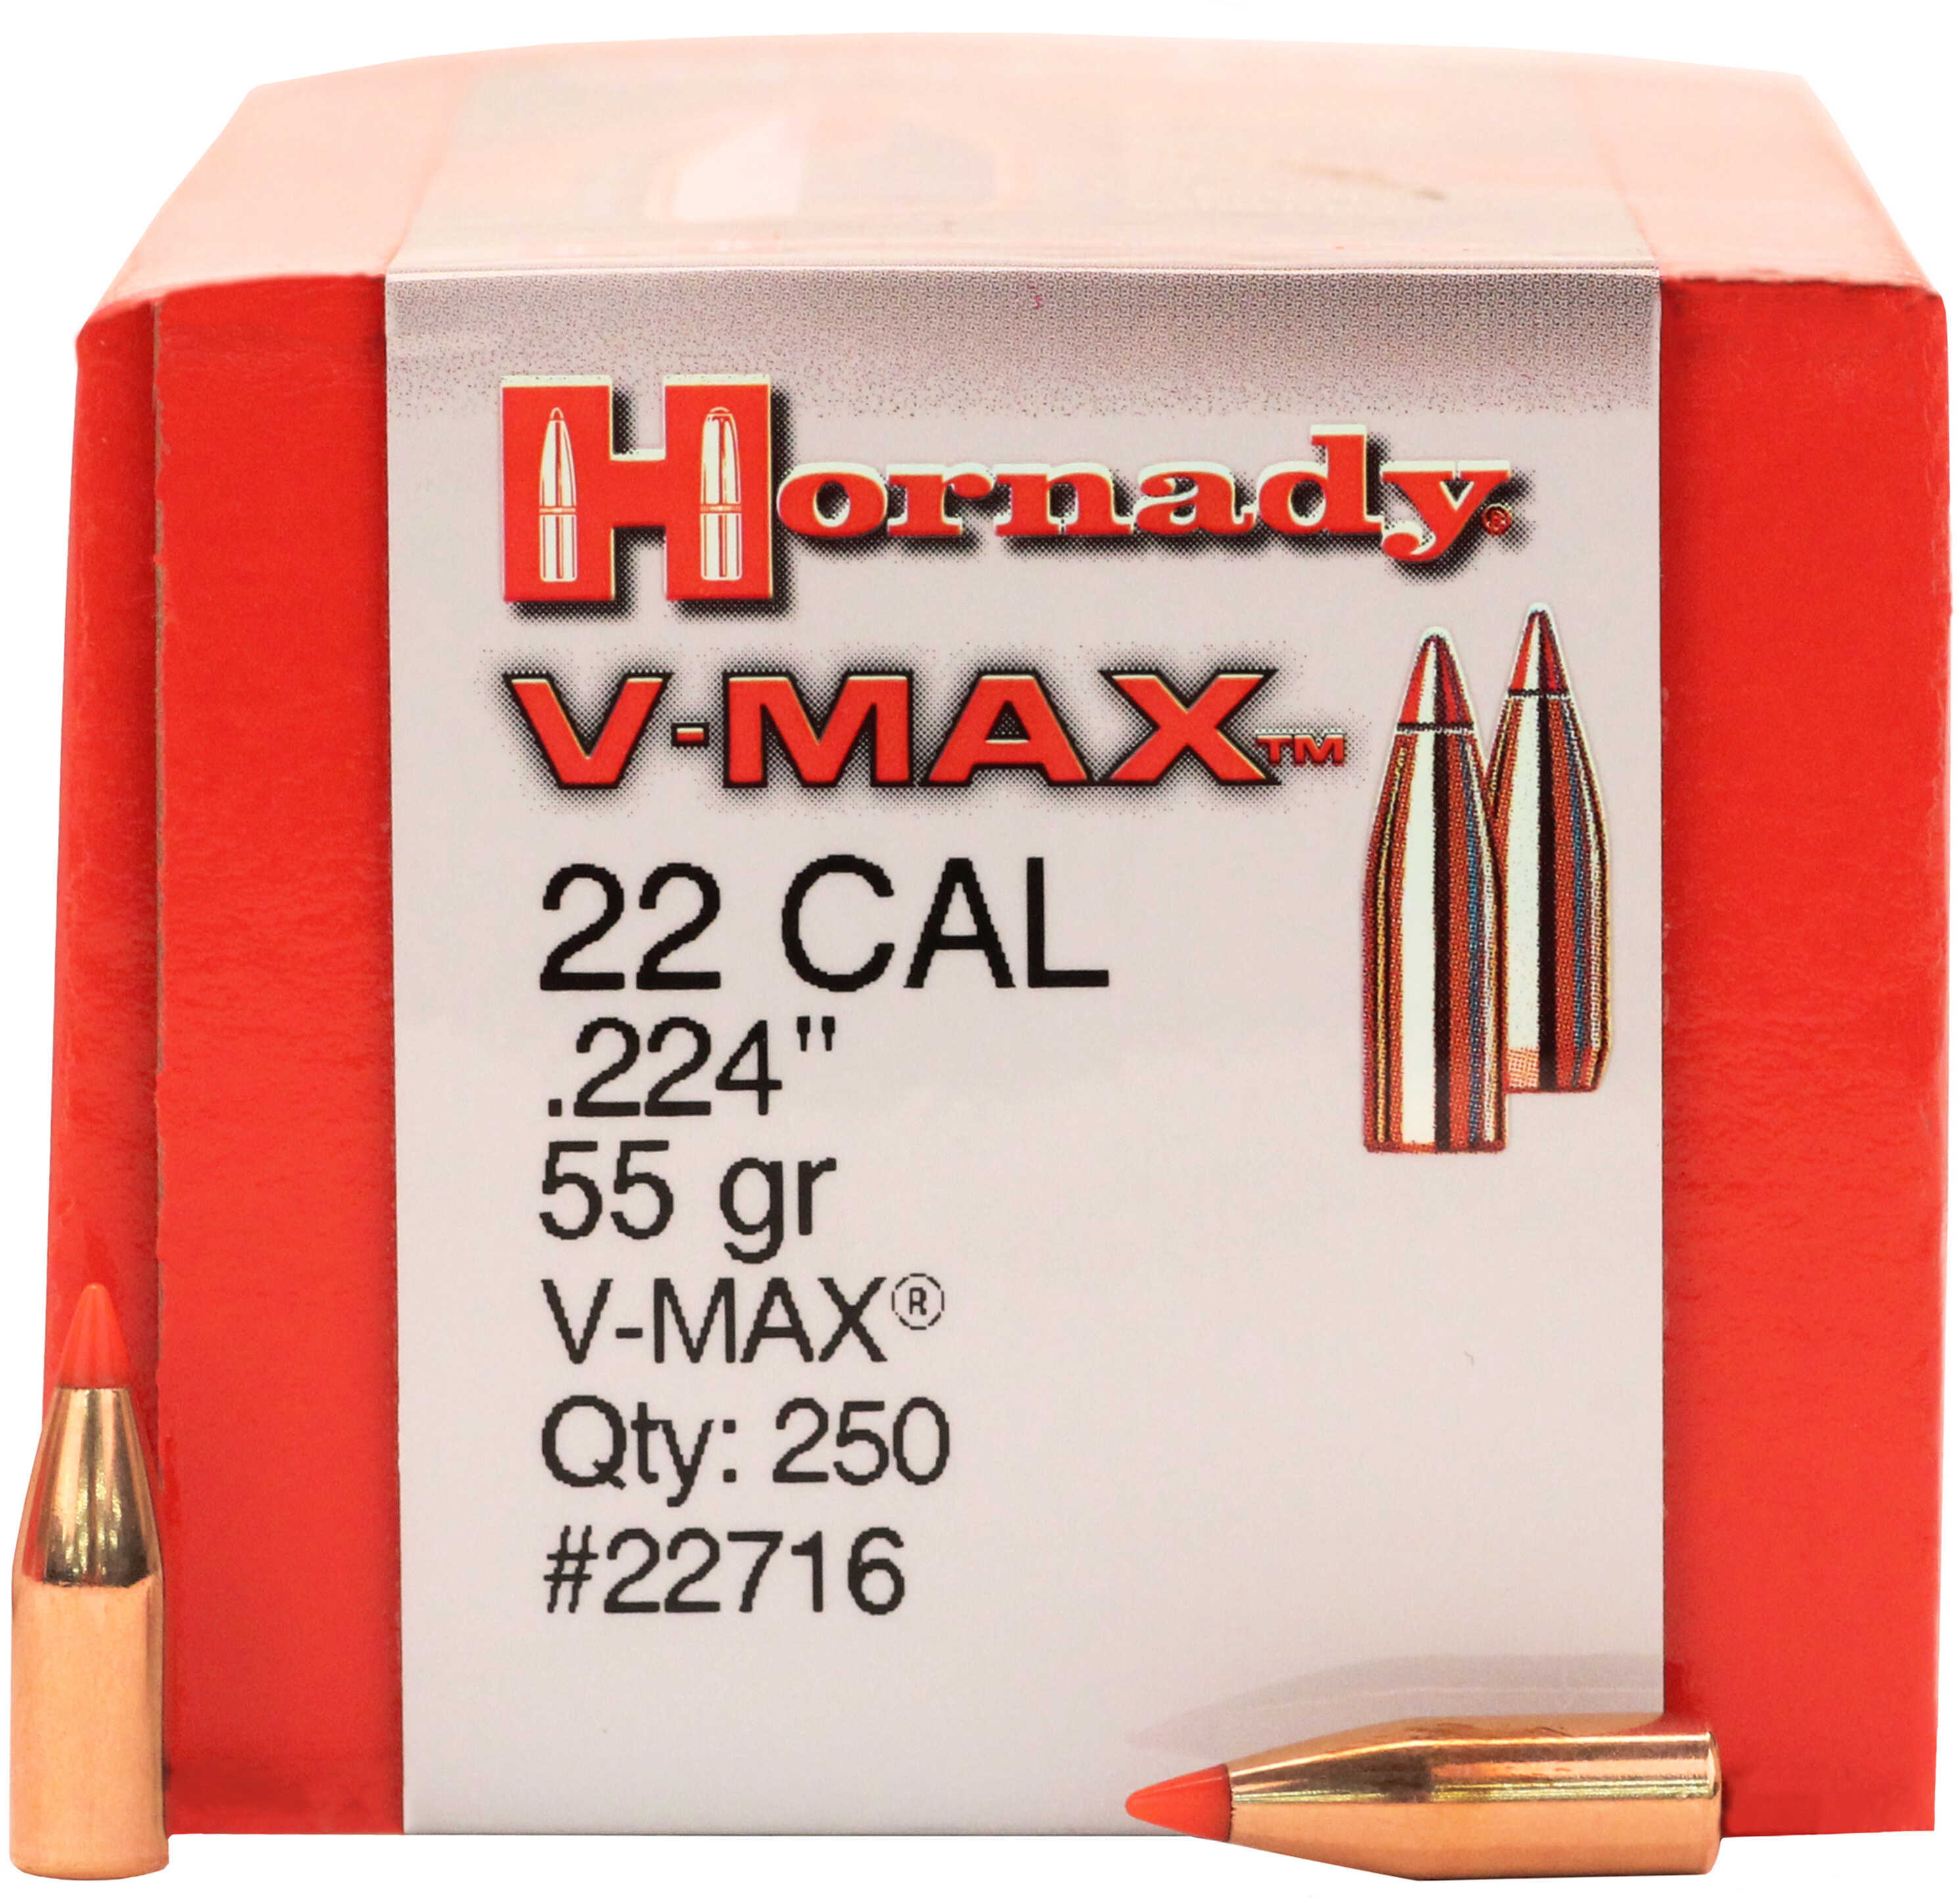 Hornady 22 Caliber Bullets .224 55 Grain V-Max Per 250 Md: 22716